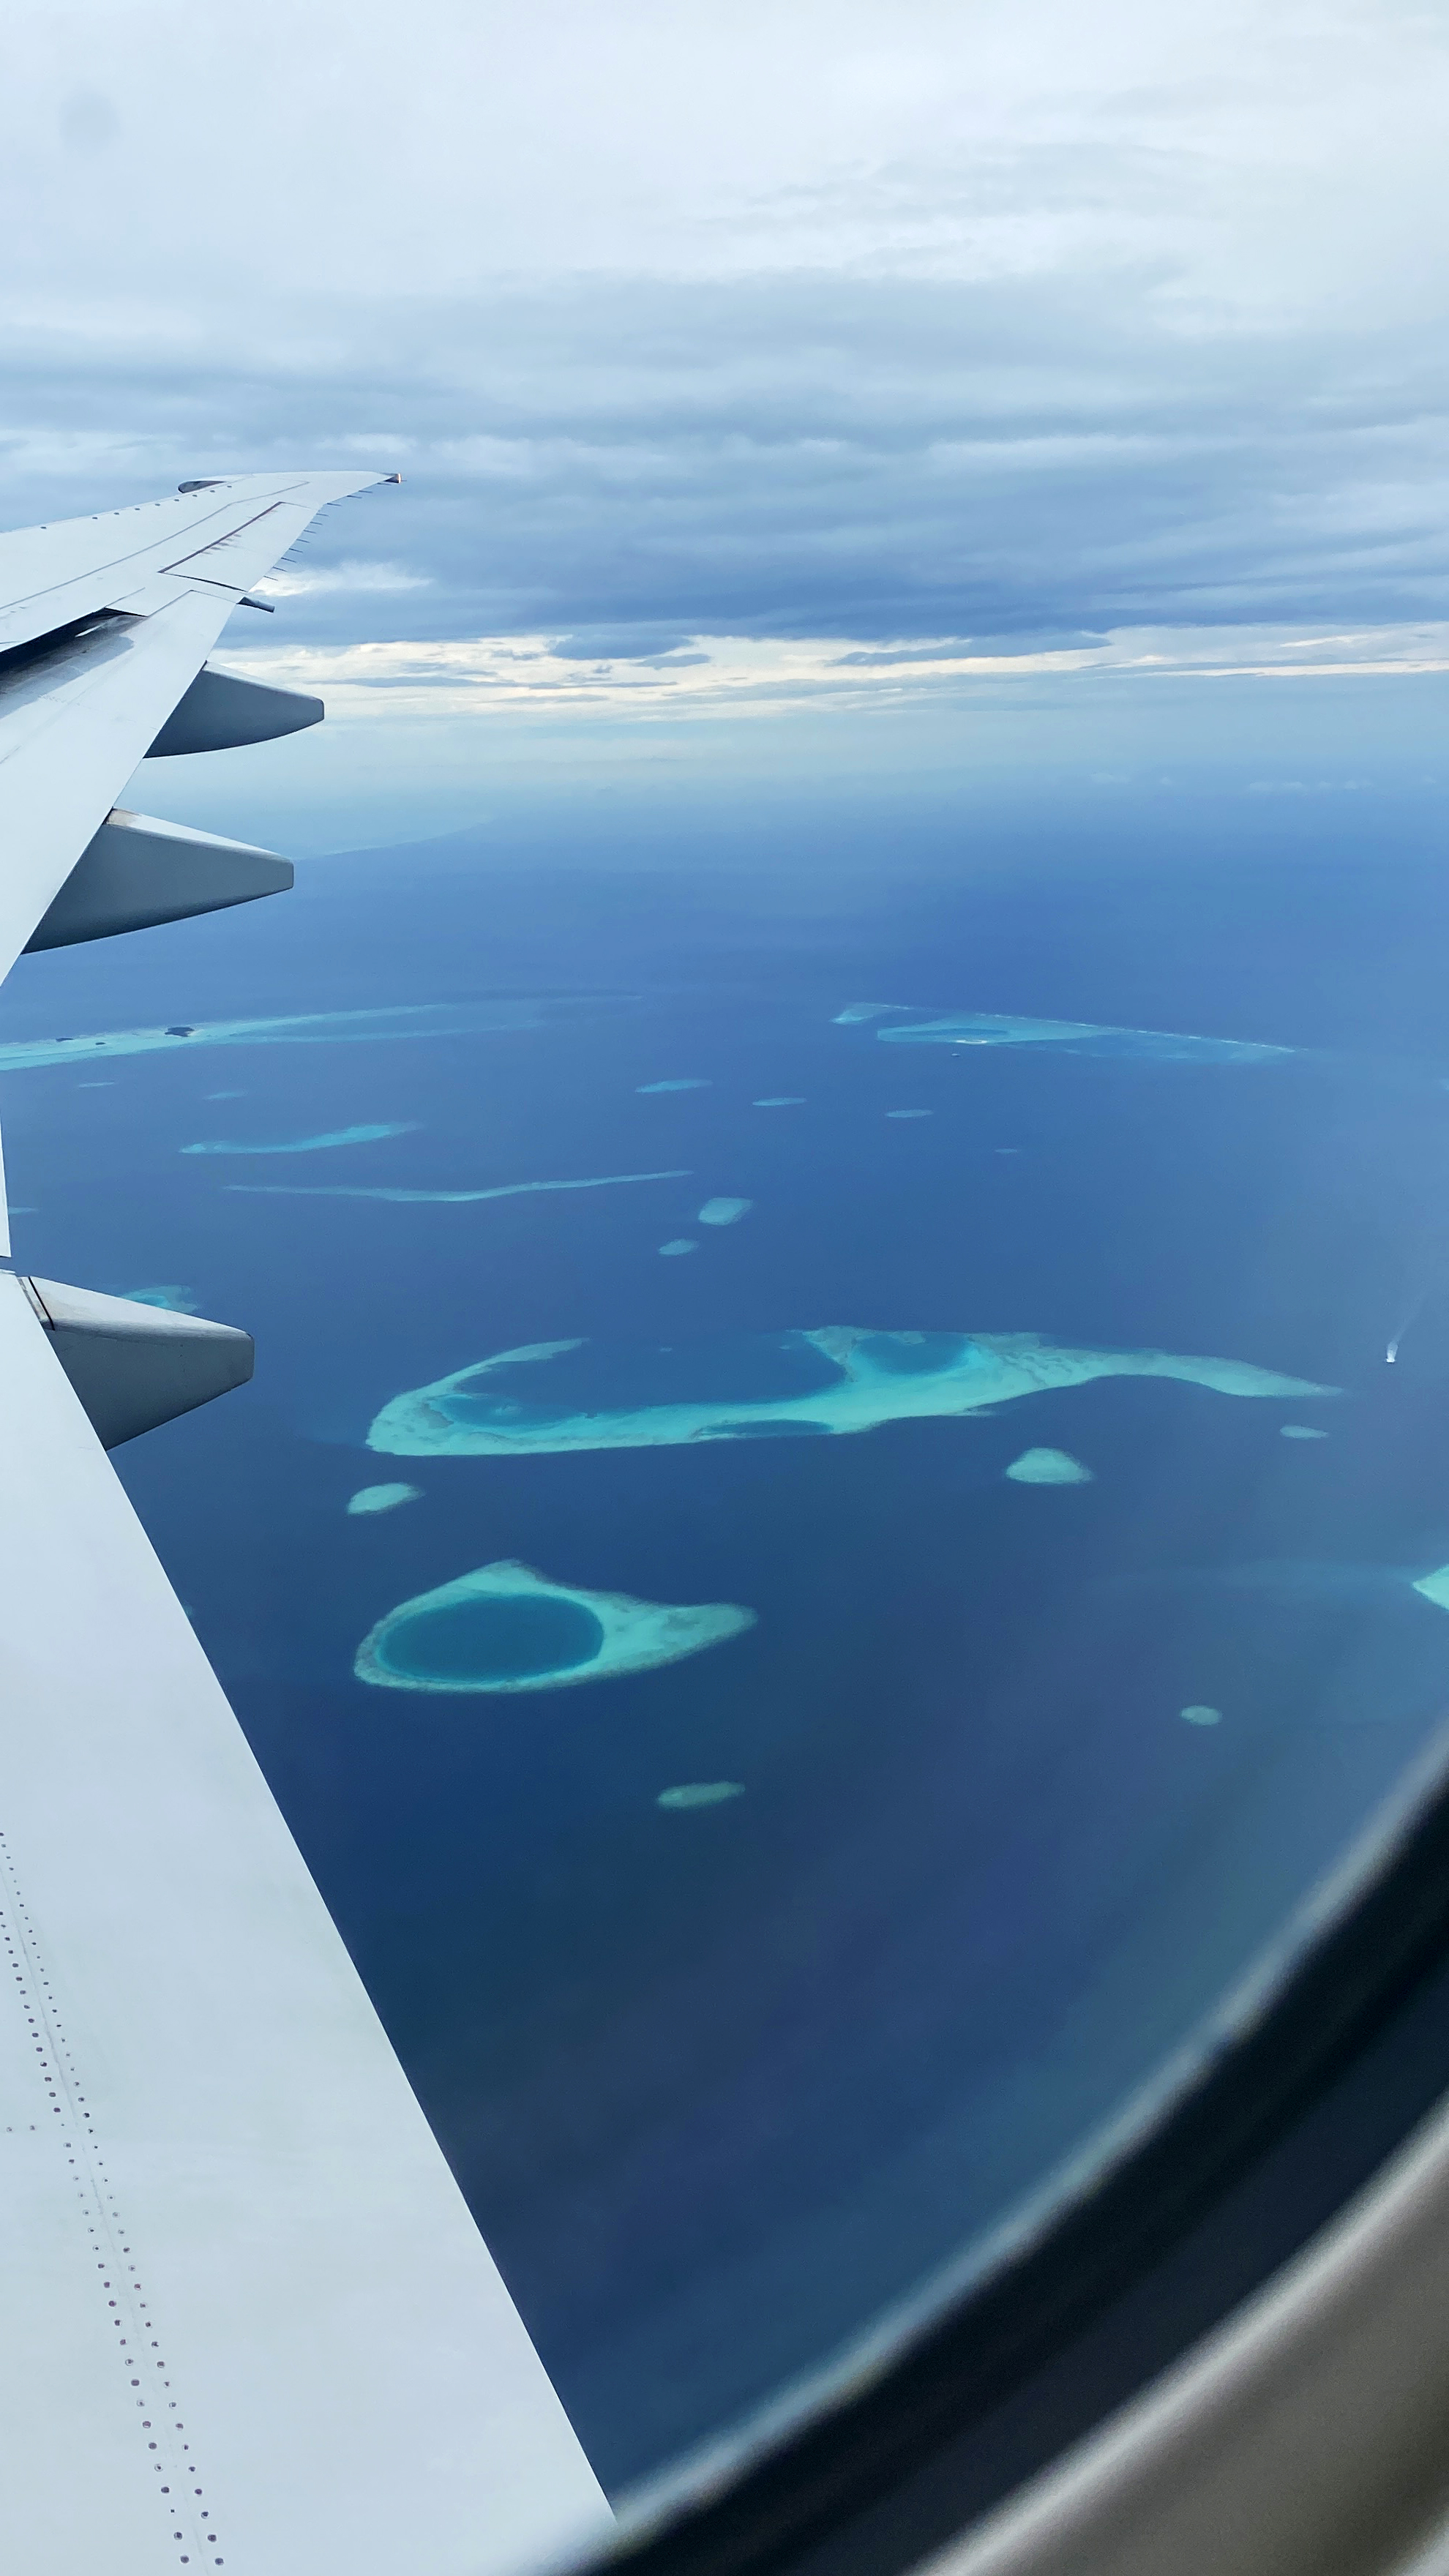 하늘 위에서 보이는 몰디브의 모습-2